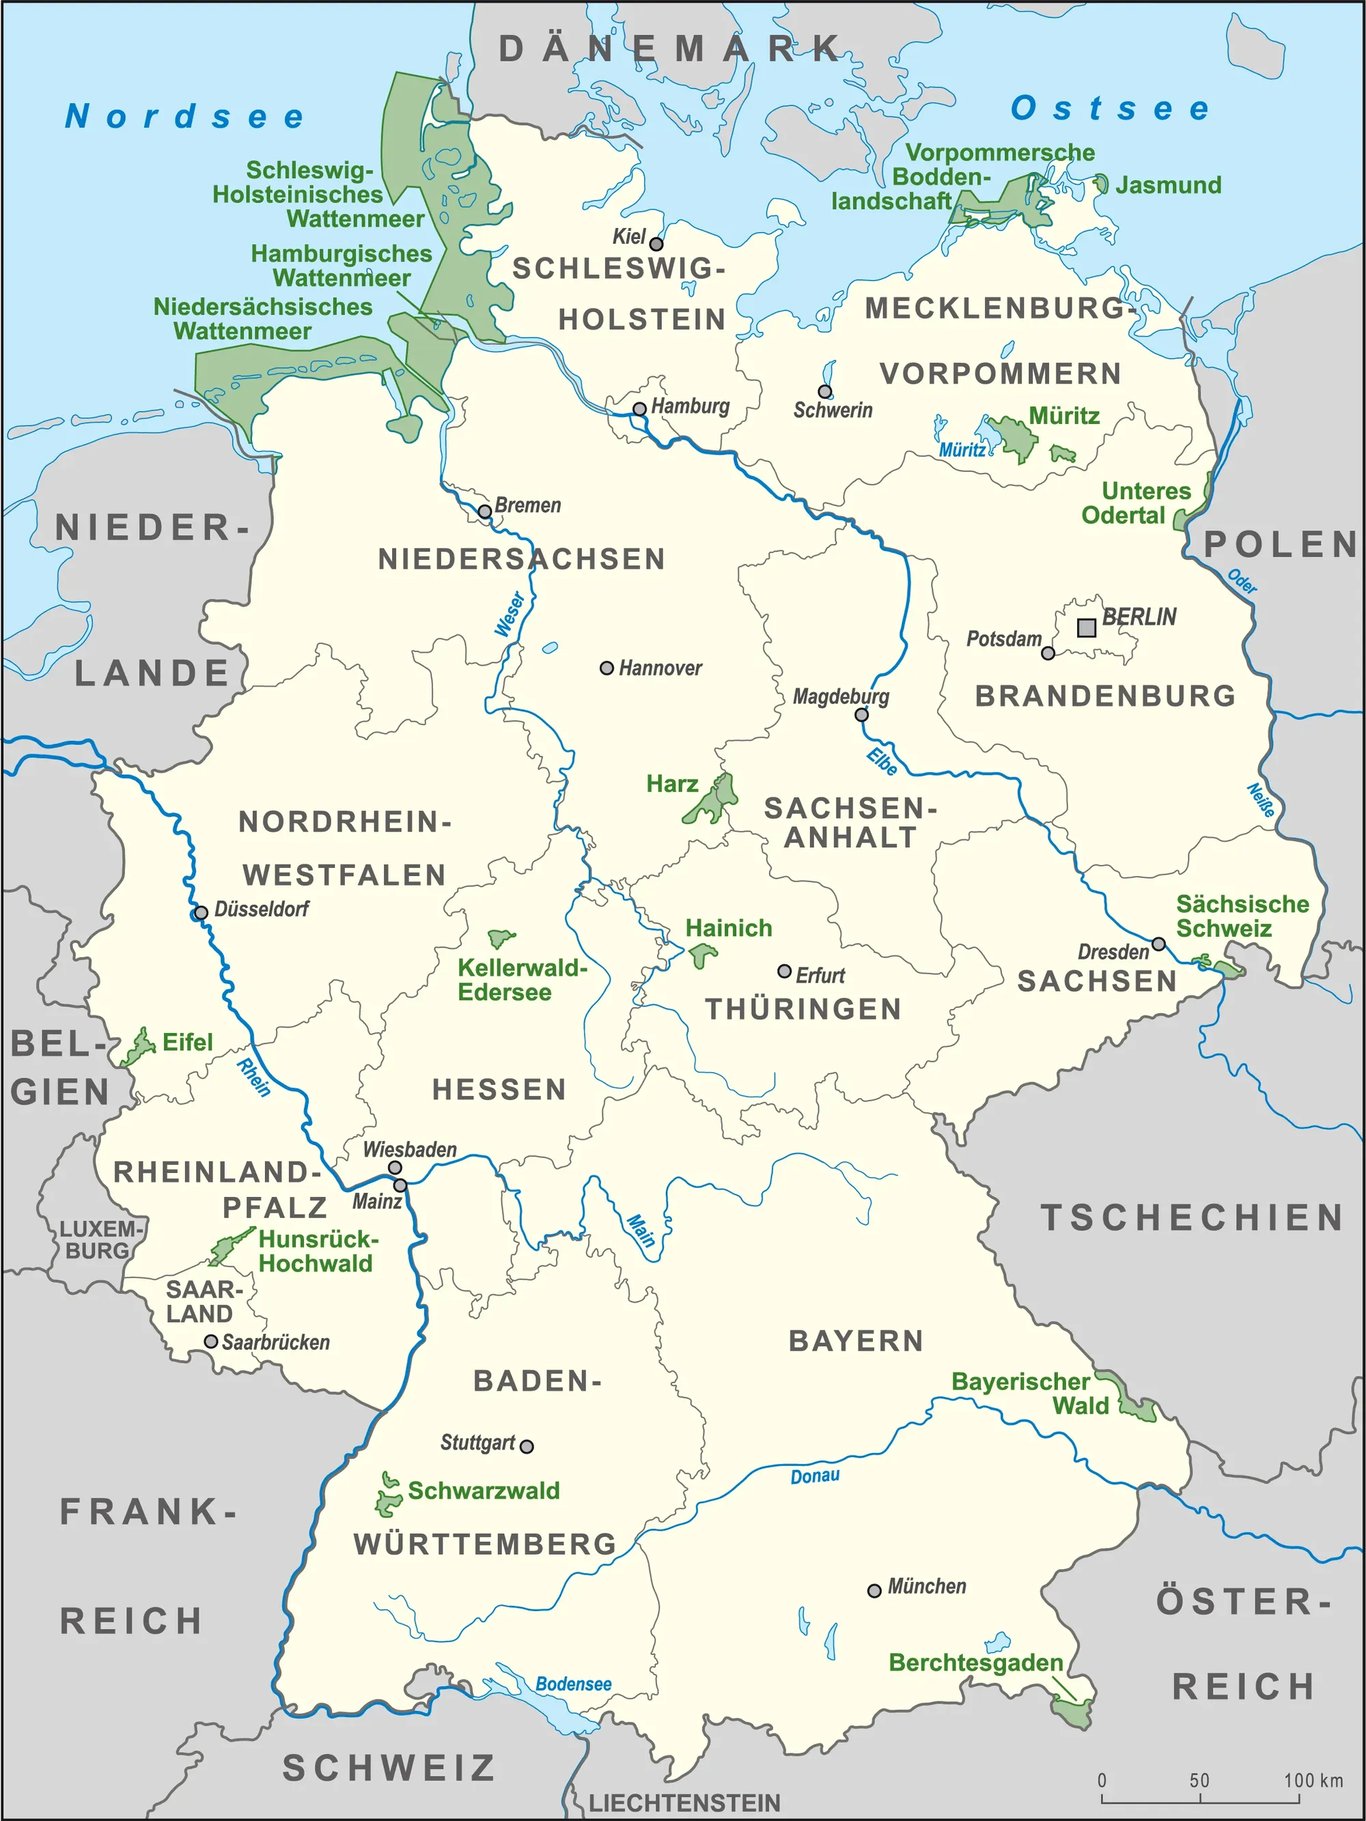 Németország összes (16) nemzeti parkja egy helyen